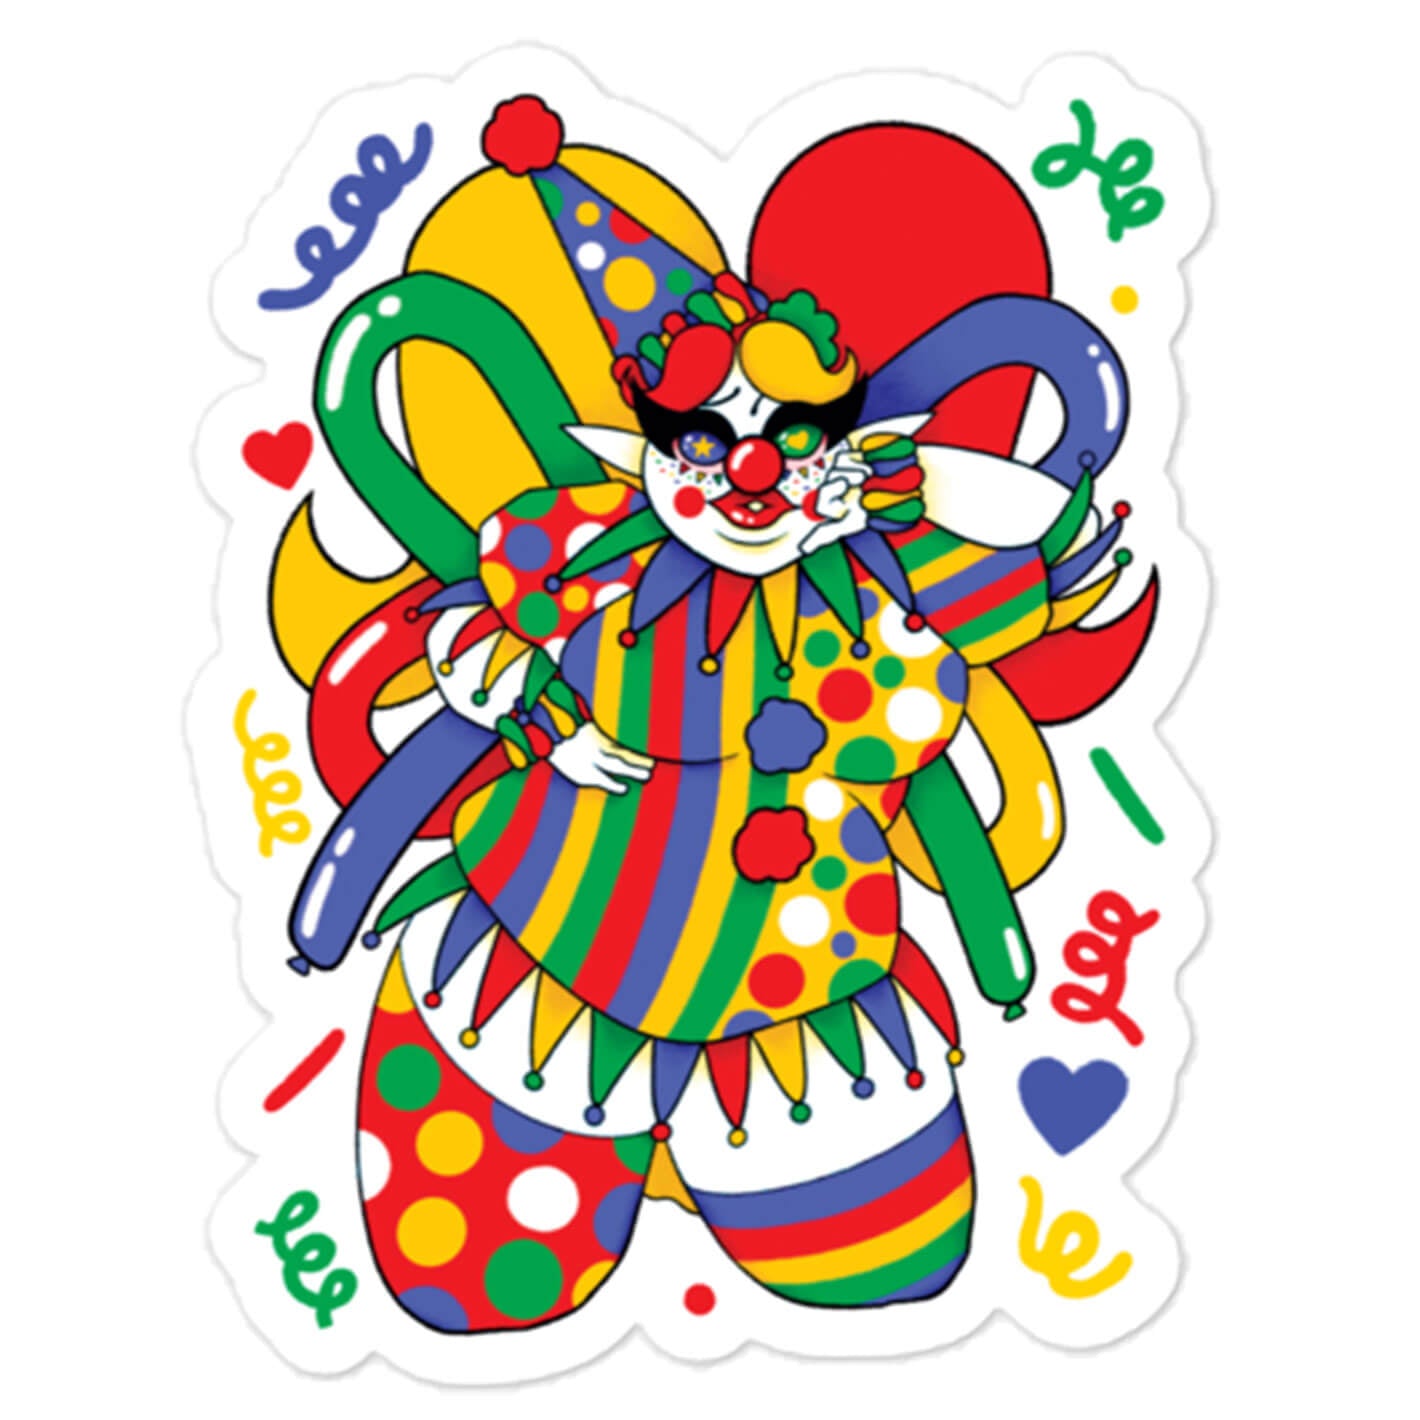 Clowncore fairy sticker.